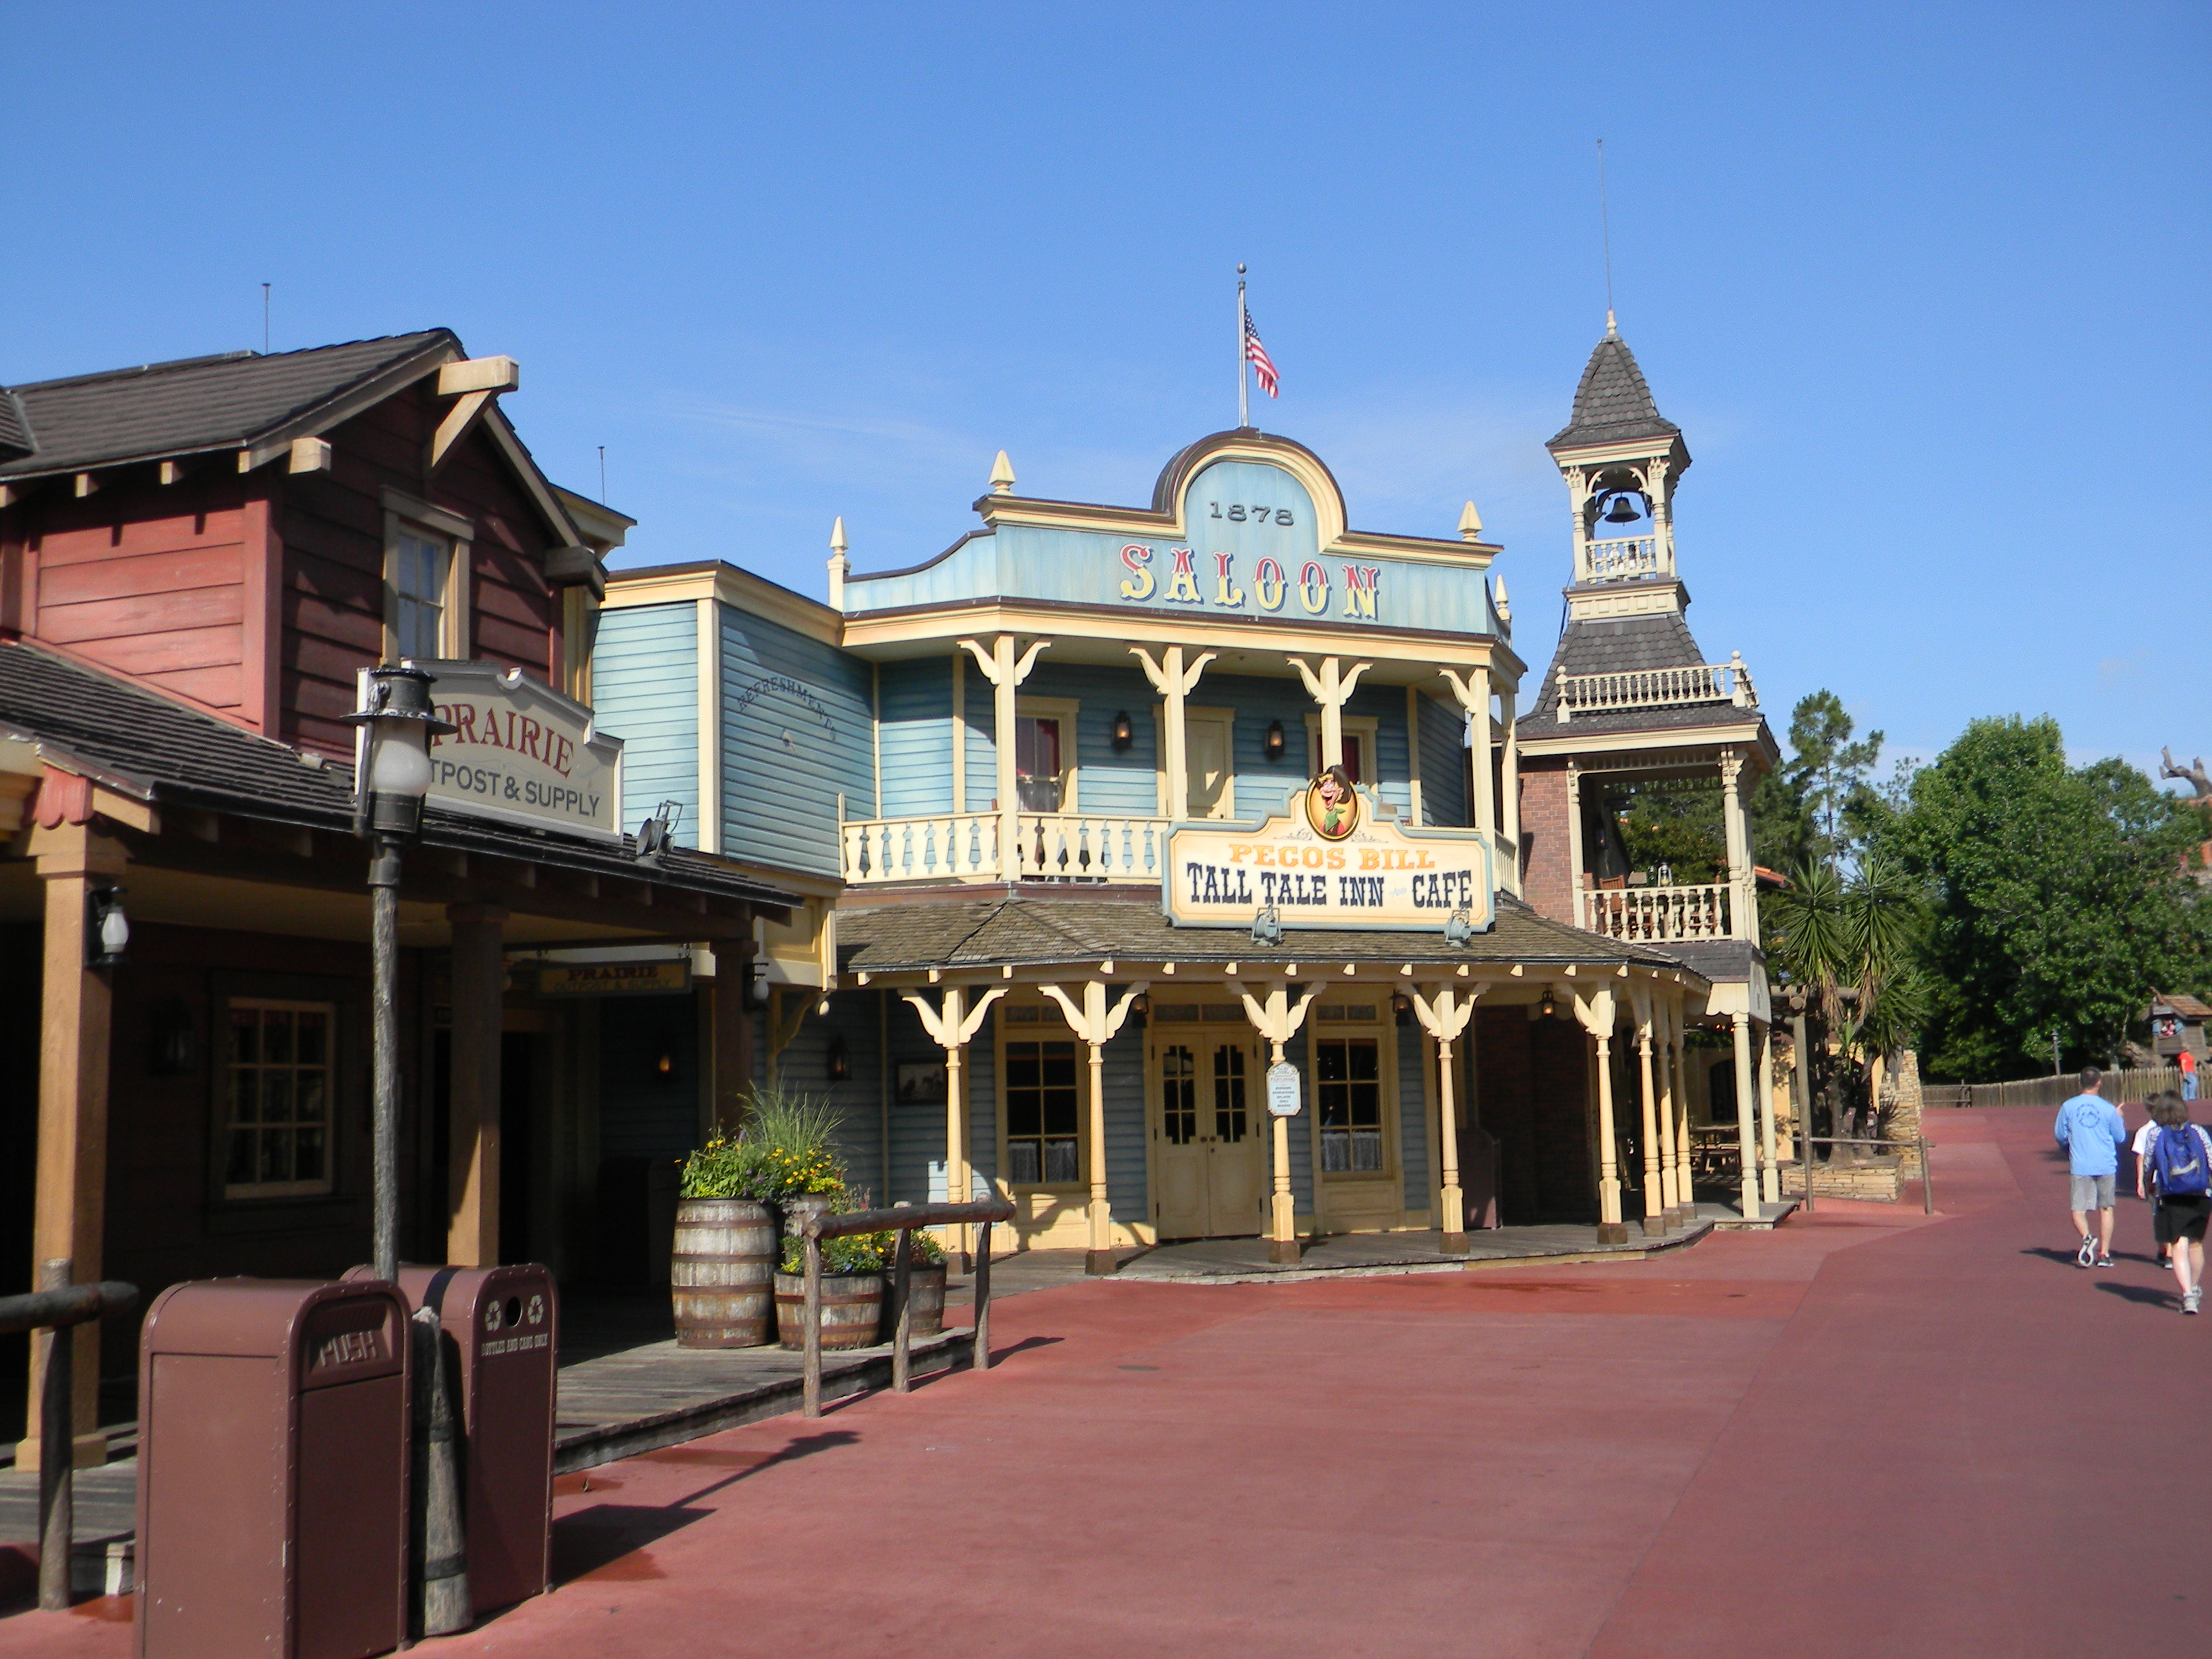 Walt Disney World's Frontierland - Living a Disney LifeLiving a Disney Life